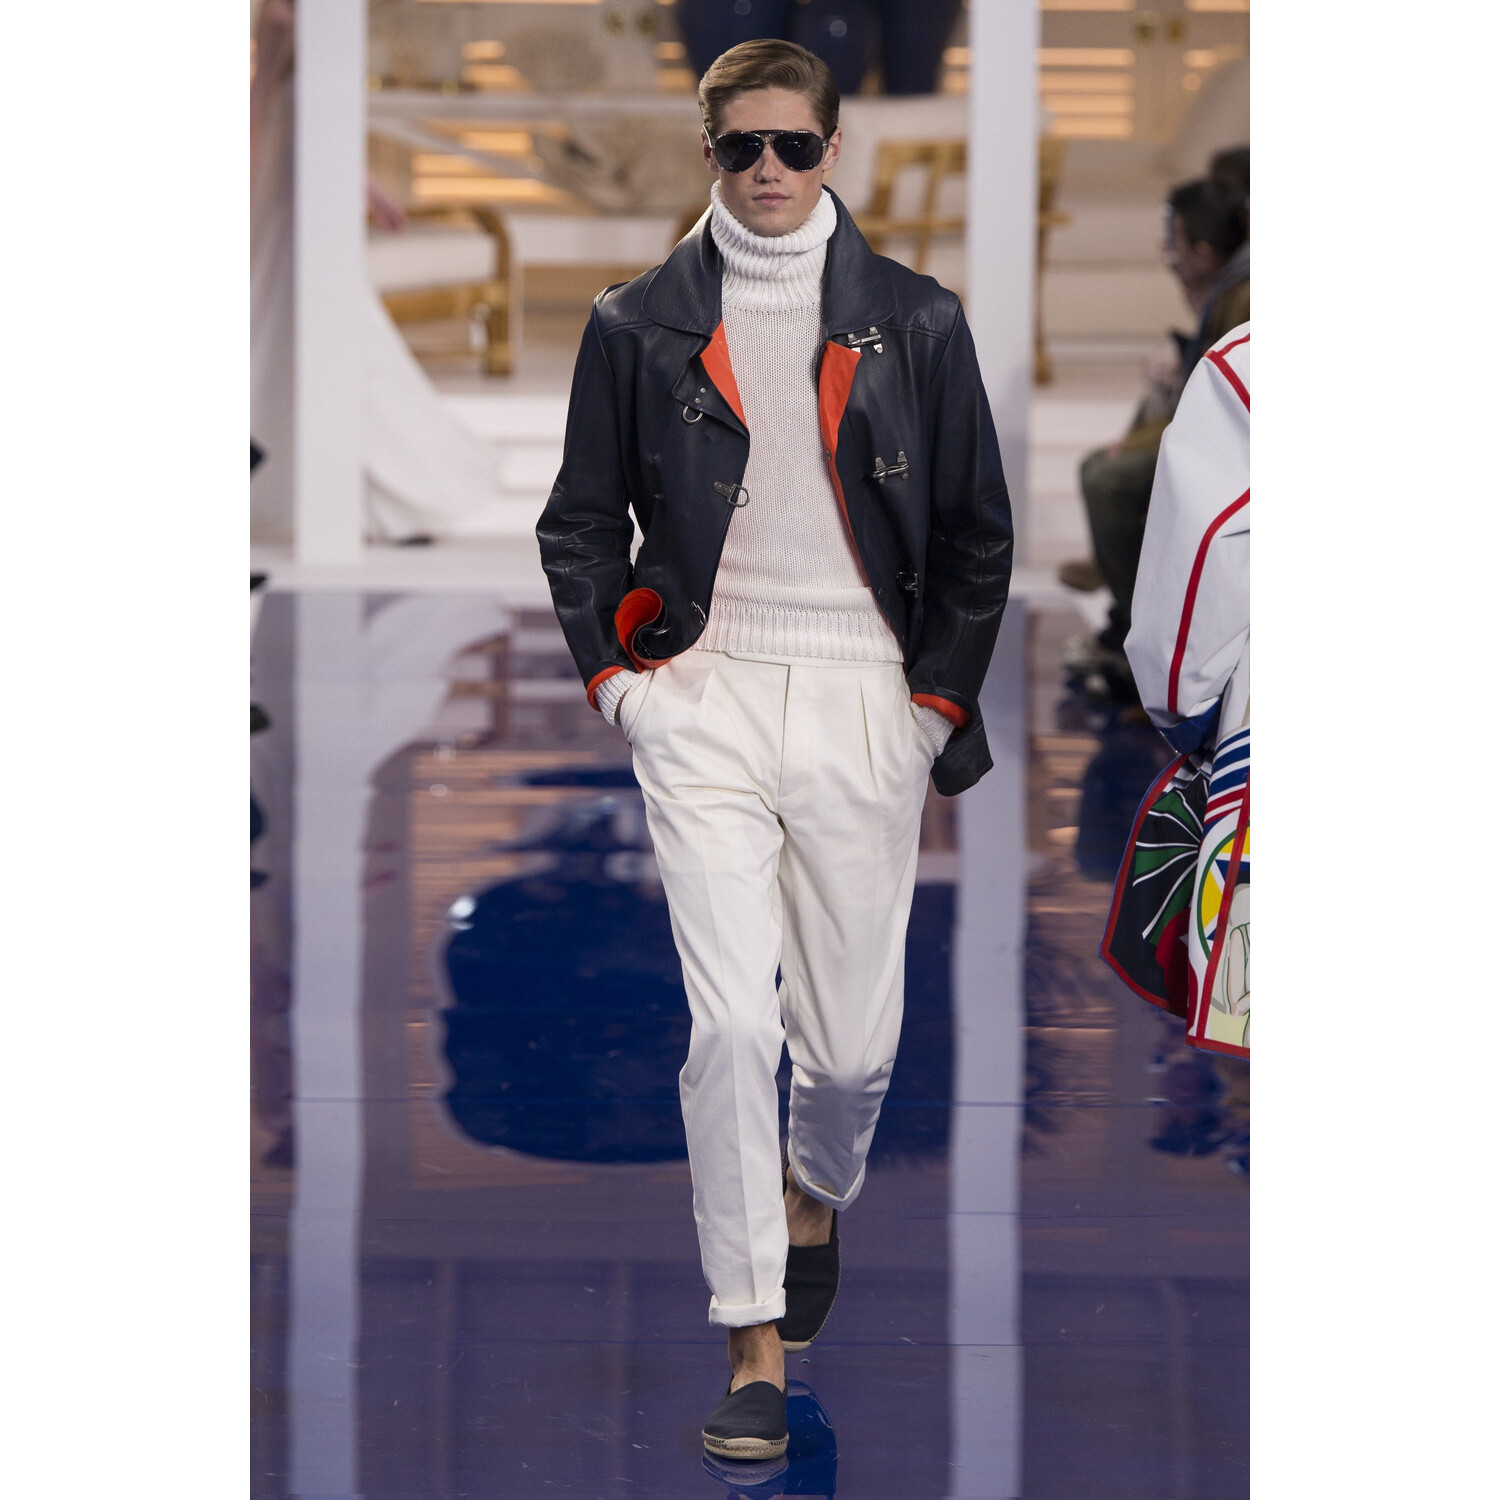 Фото Ralph Lauren Fall 2018 Ready-to-Wear Ральф Лорен осень зима 2018 коллекция неделя моды в Нью Йорке Mainstyles